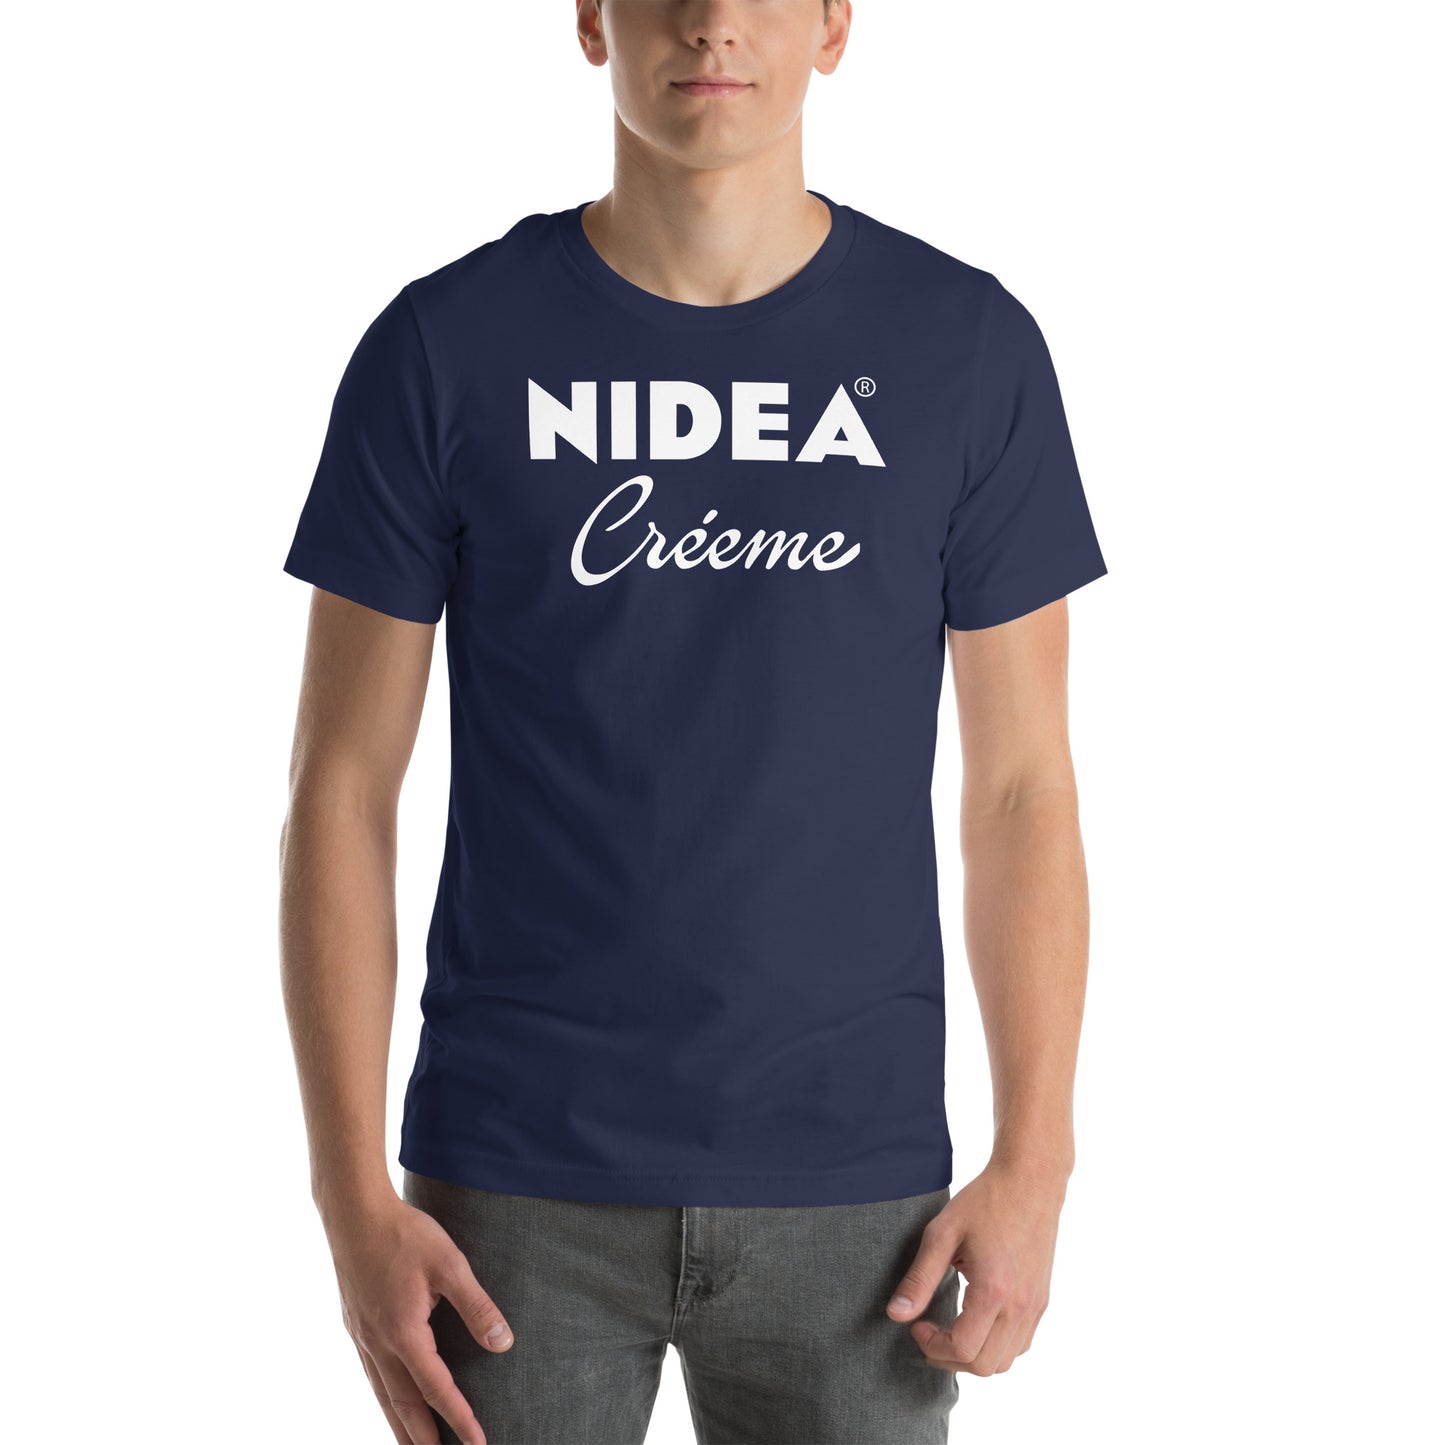 Camiseta Nidea Créeme logo Nivea. Color Azul Marino.